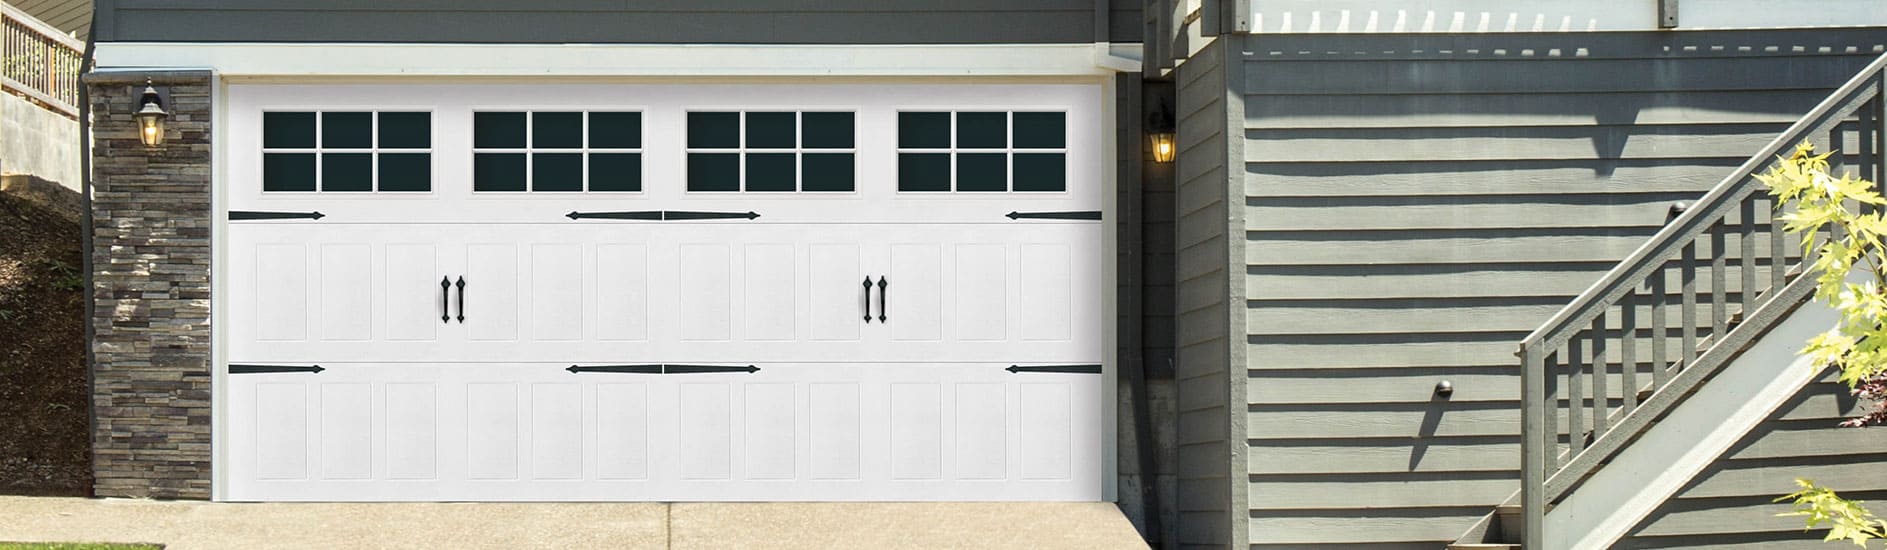 Repainting Steel Garage Doors, What Paint To Use On A Steel Garage Door